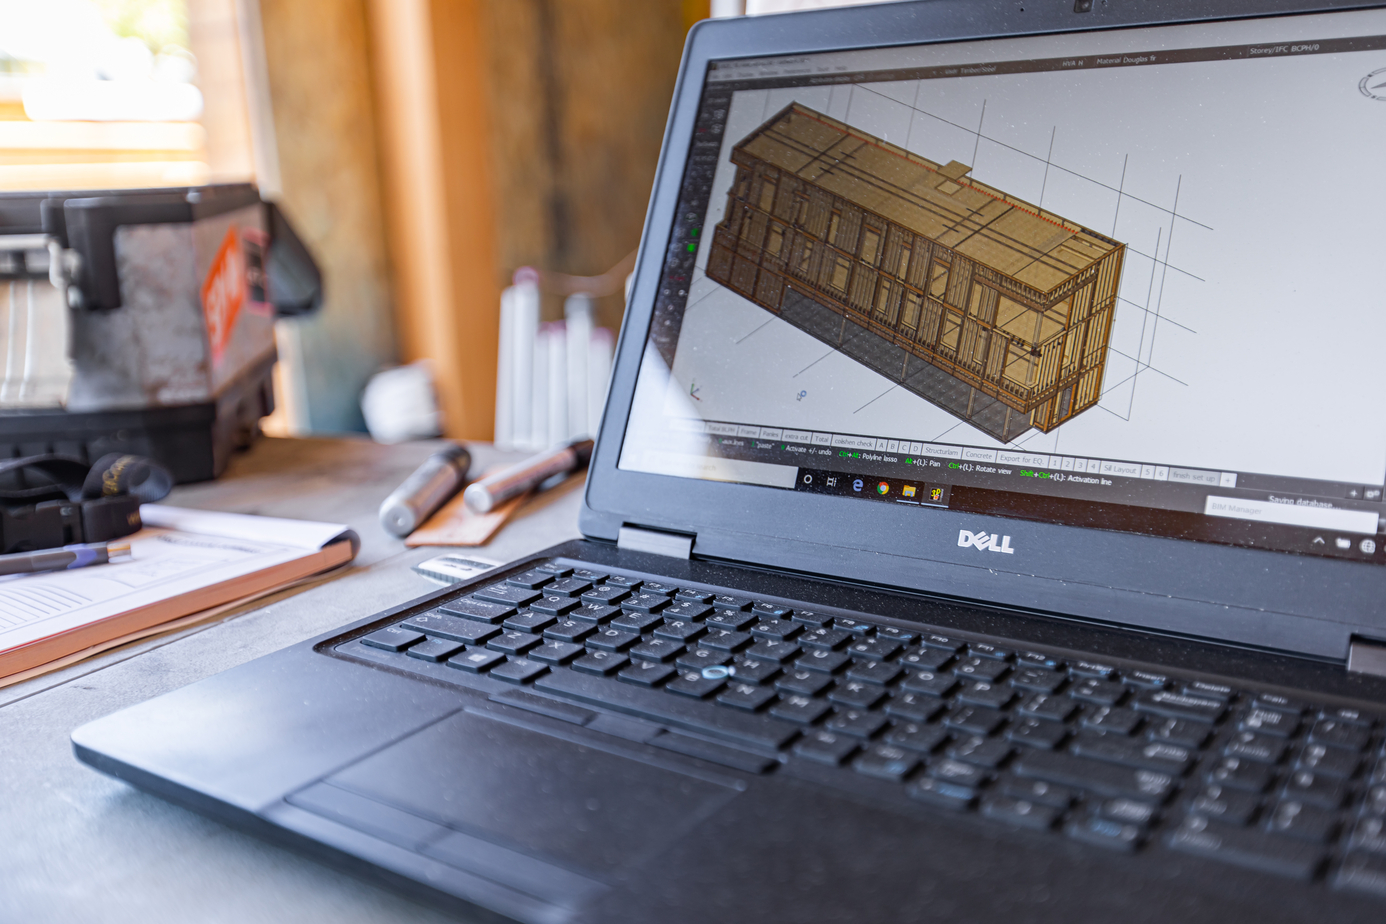 打开笔记本电脑，在屏幕上显示一个木制建筑的设计方案